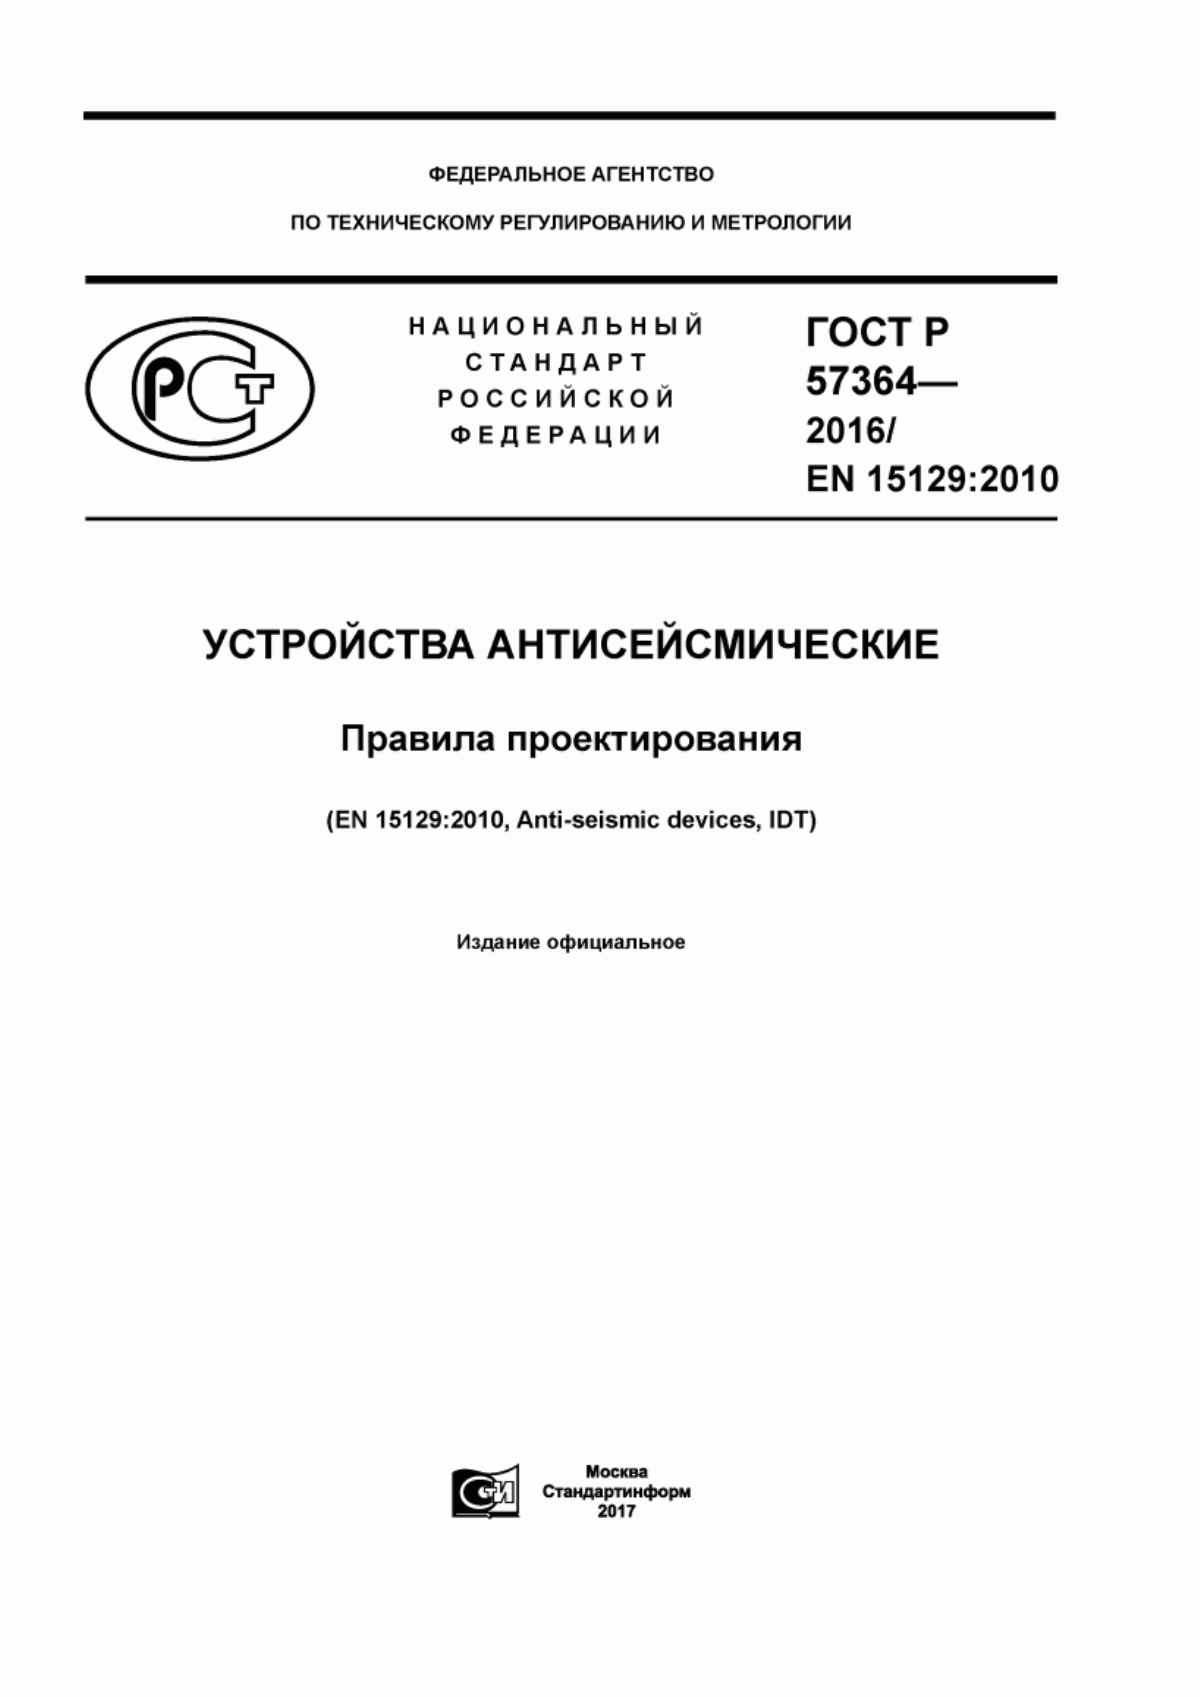 ГОСТ Р 57364-2016 Устройства антисейсмические. Правила проектирования